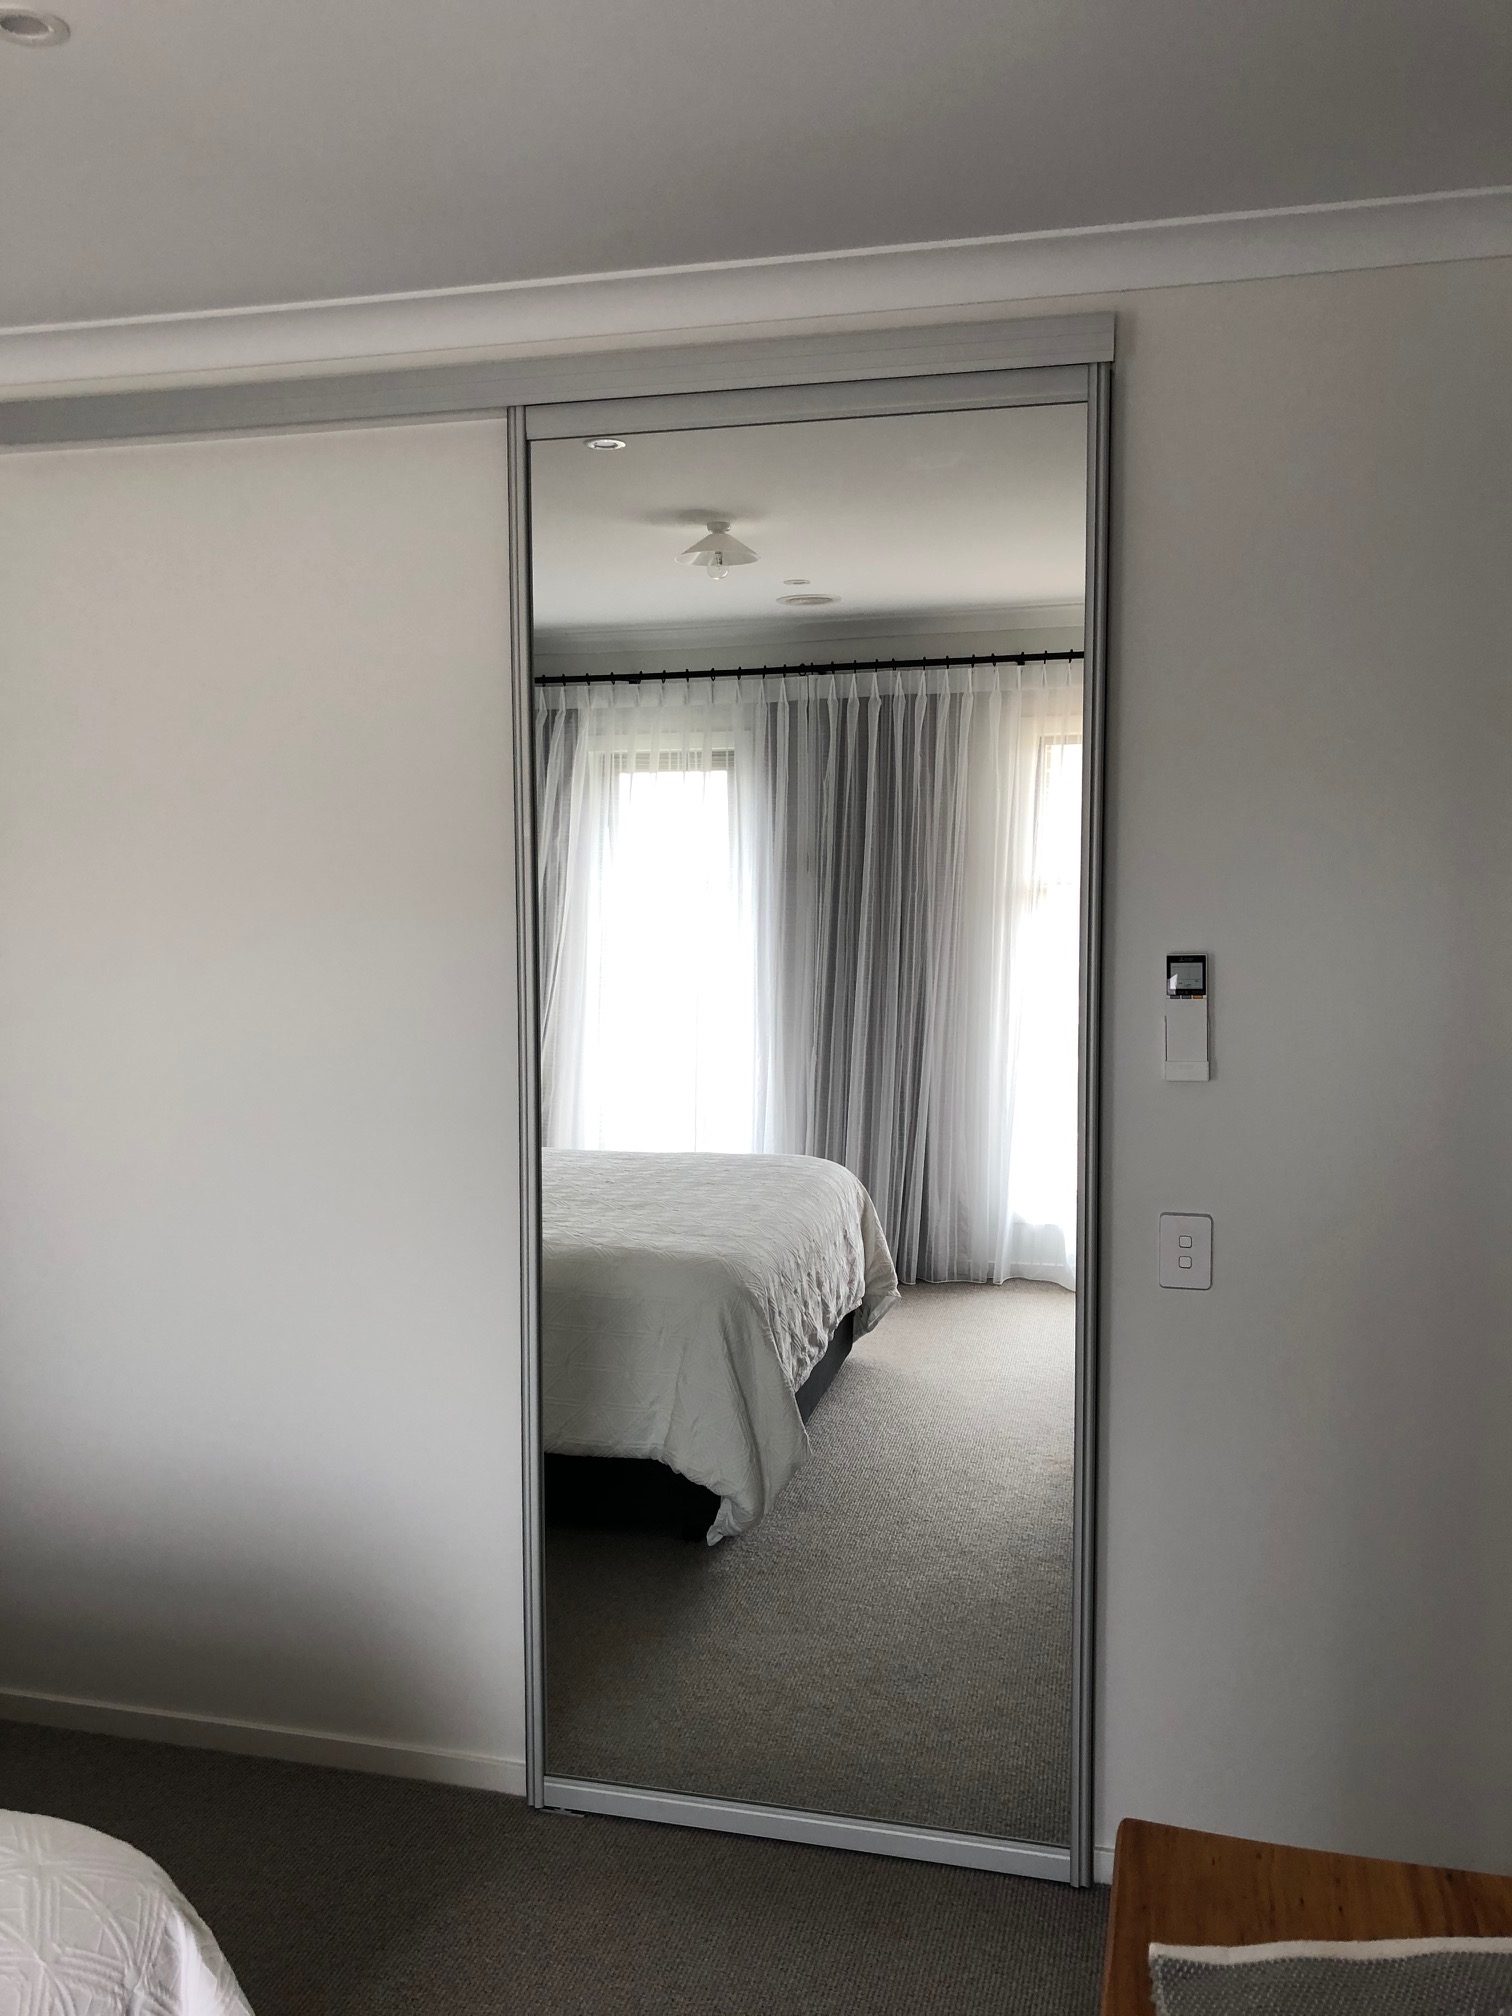 Bedroom To Ensuite - Single Sliding Full Length Mirror Insert